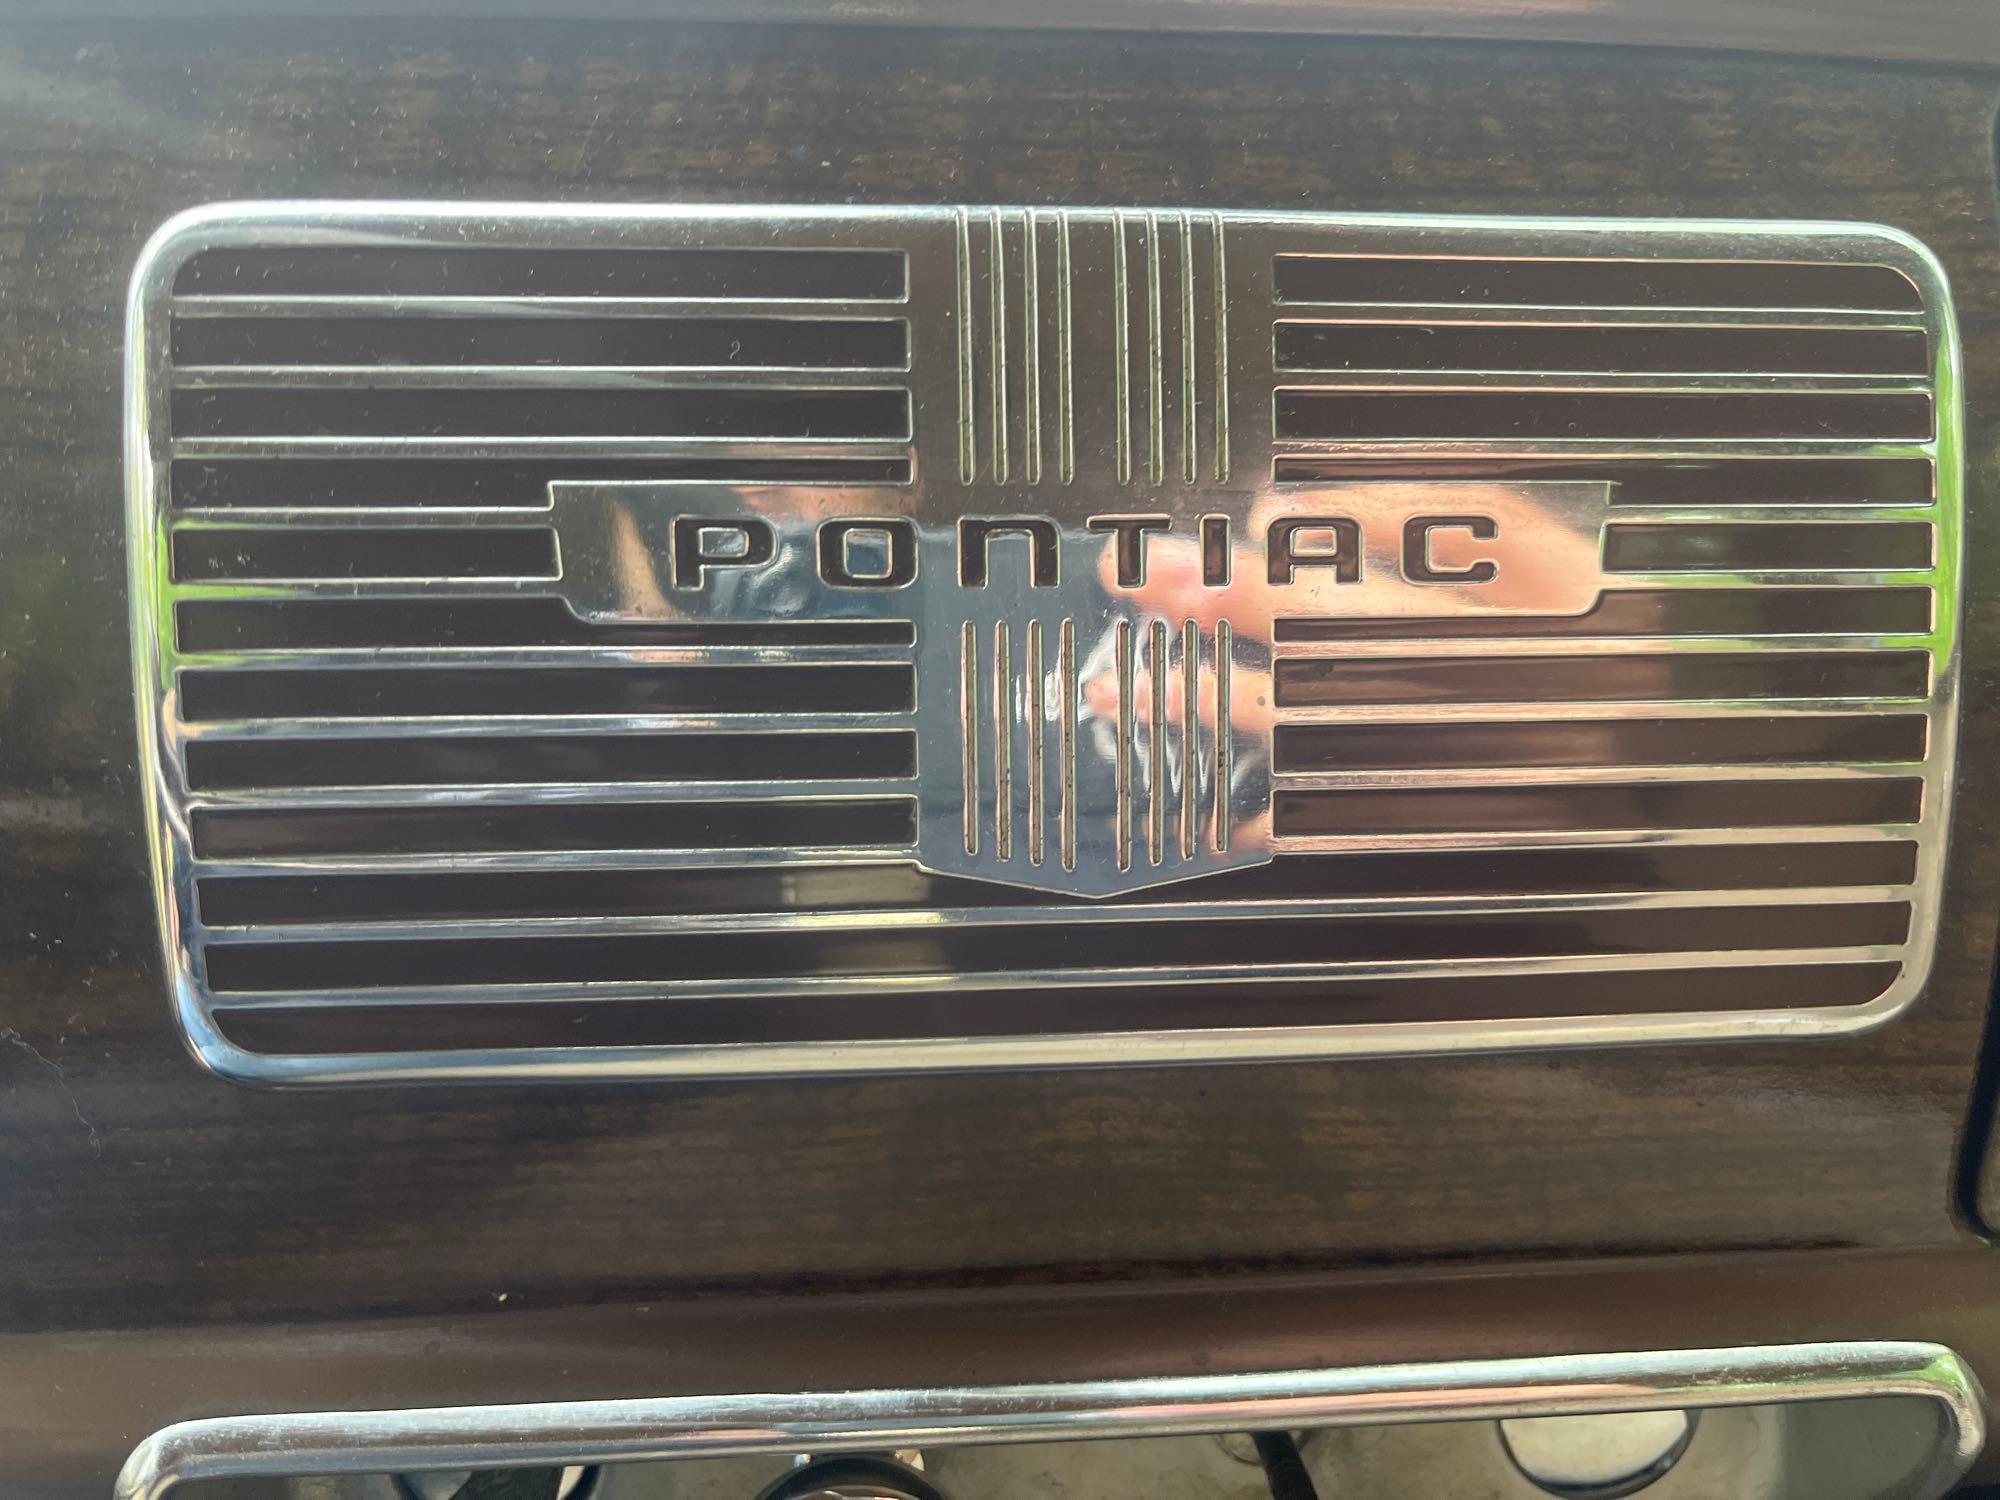 1939 Pontiac Deluxe 6